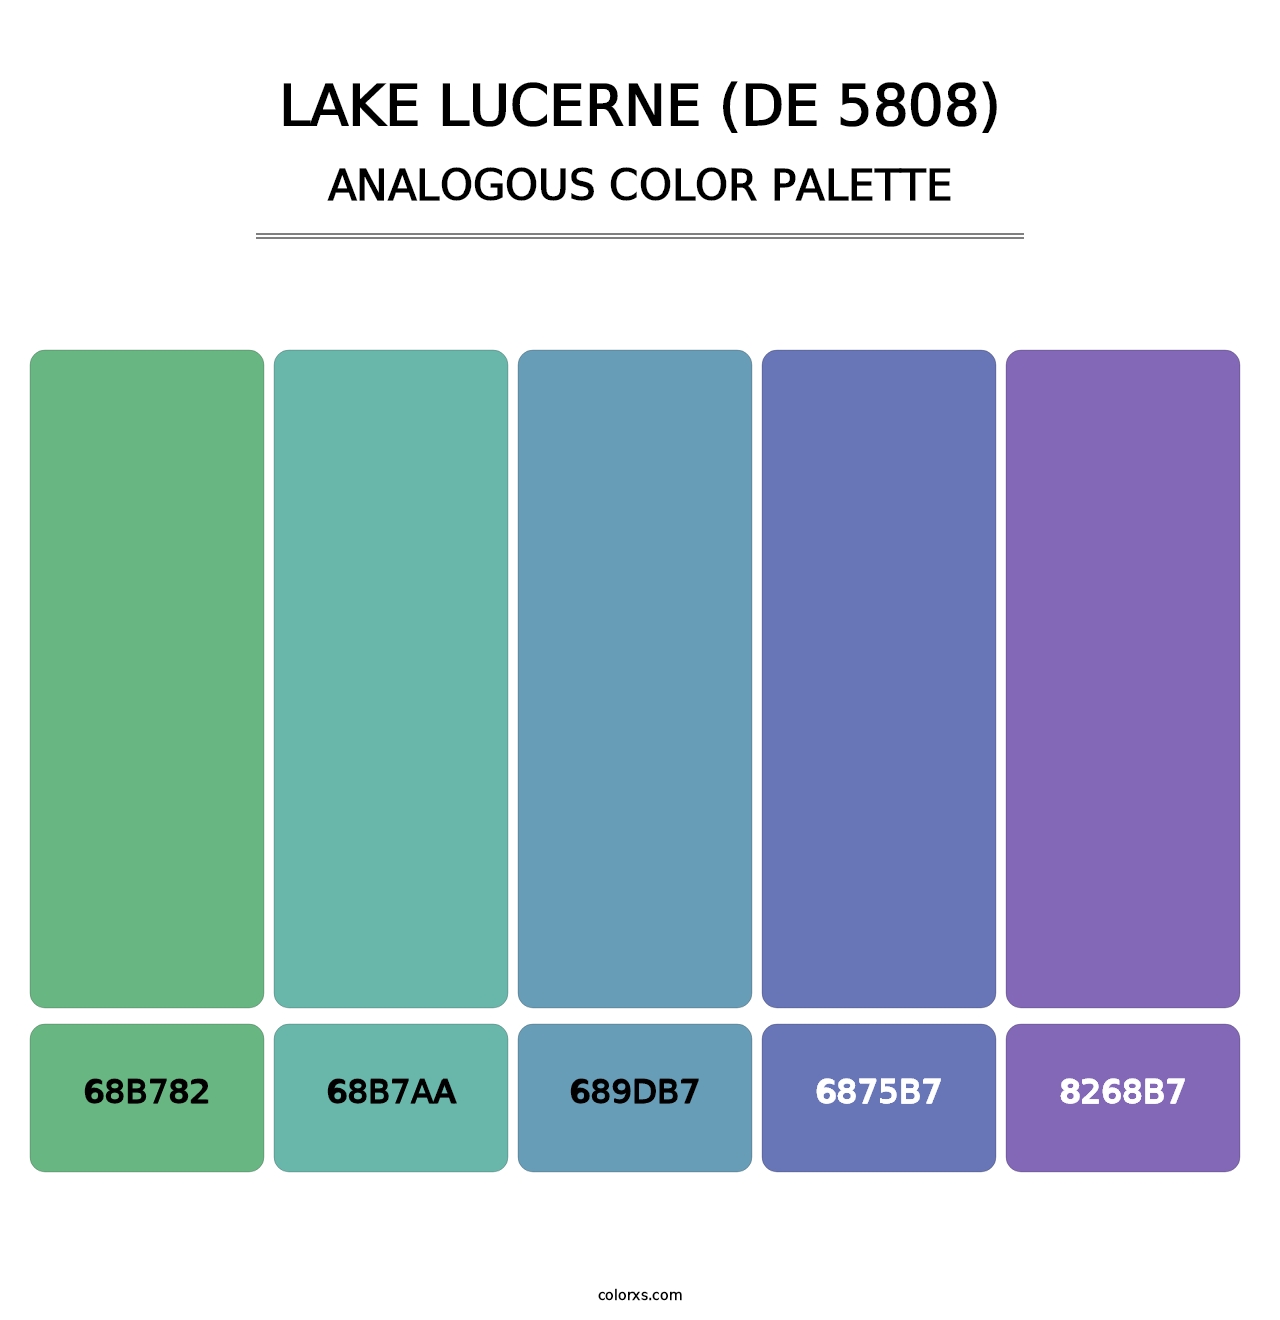 Lake Lucerne (DE 5808) - Analogous Color Palette